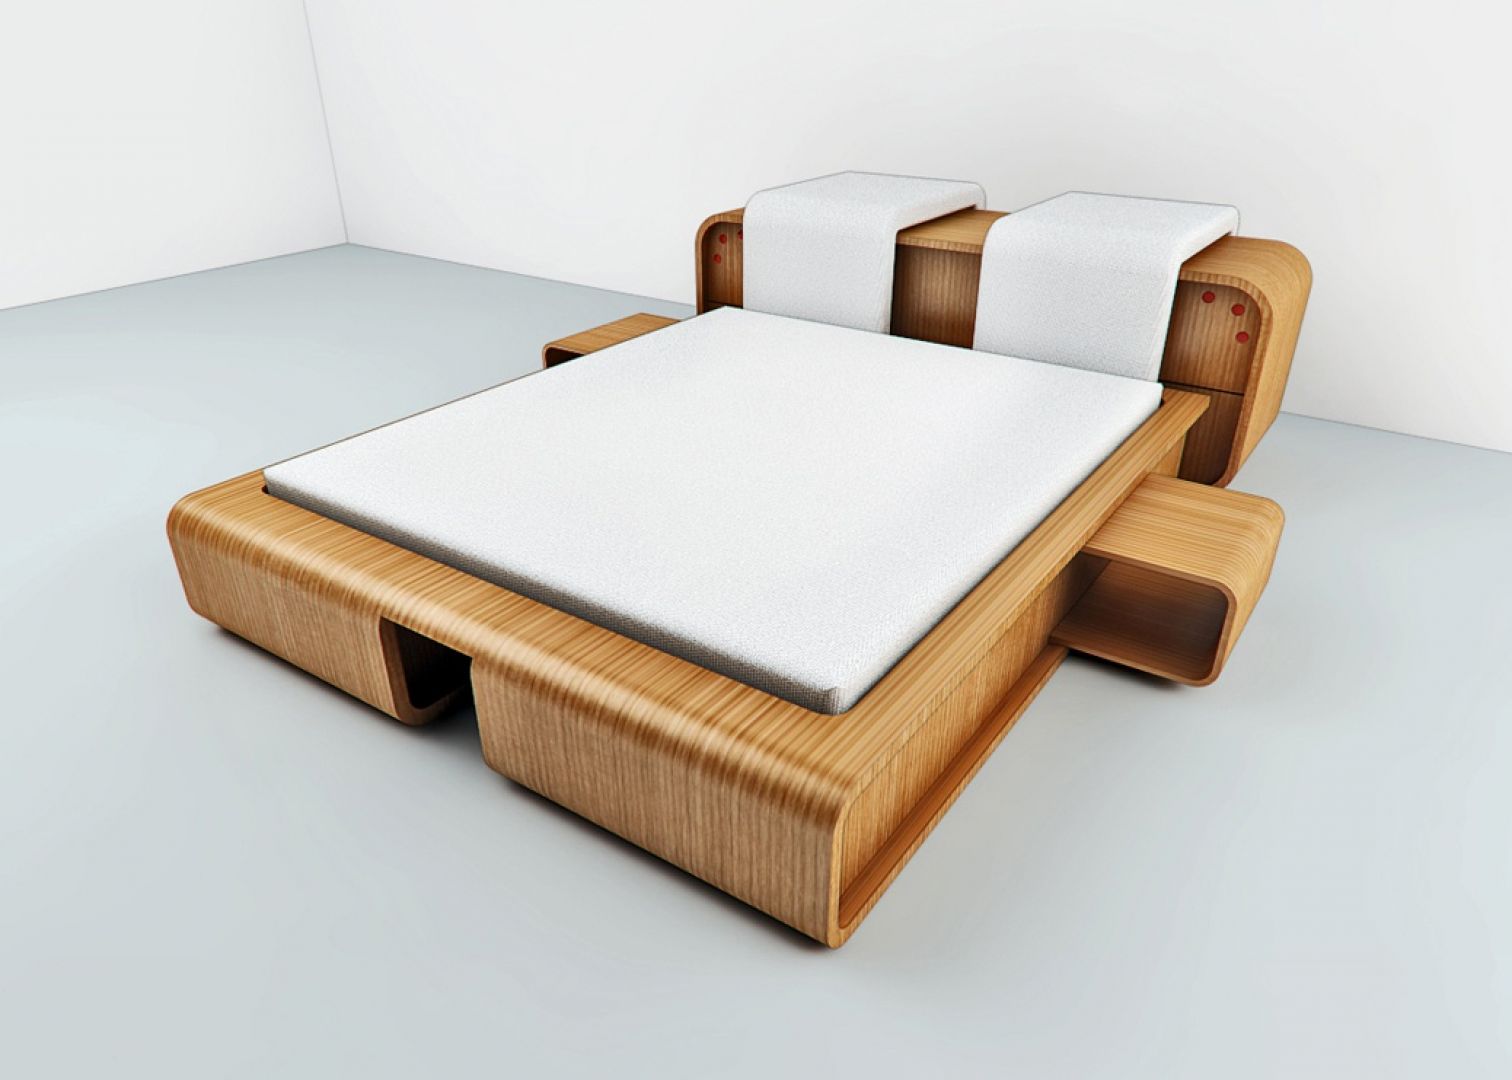 Drewniane łóżko z elementem tapicerowanego wezgłowia, osobno dla dwóch osób. Projekt Tomasza Wagnera
Fot. Archiwum 